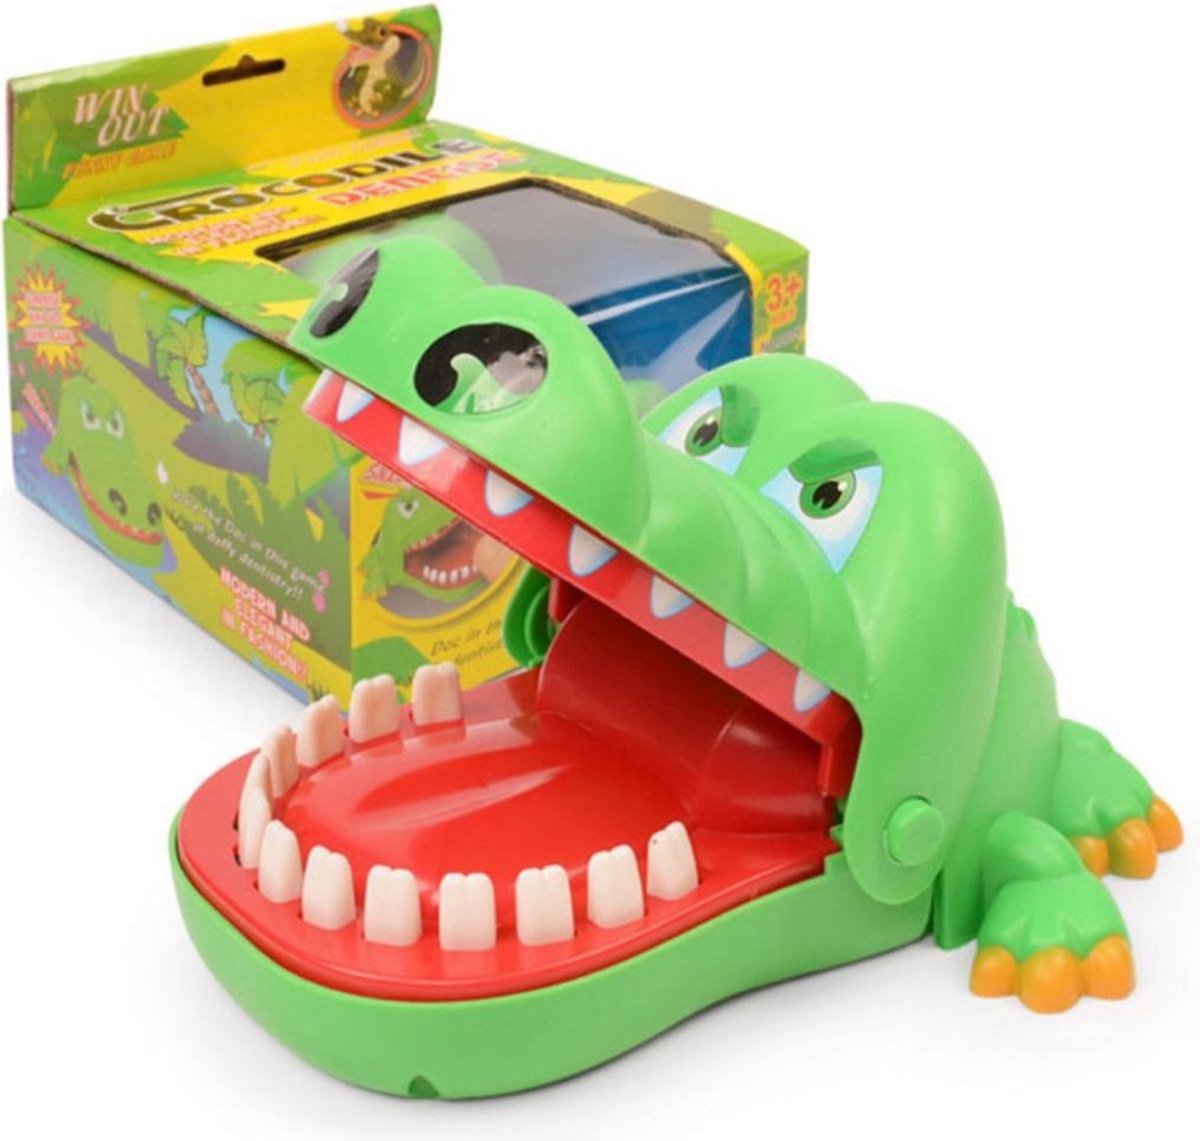 Jouets dents de crocodile pour enfants, alligator mordant les